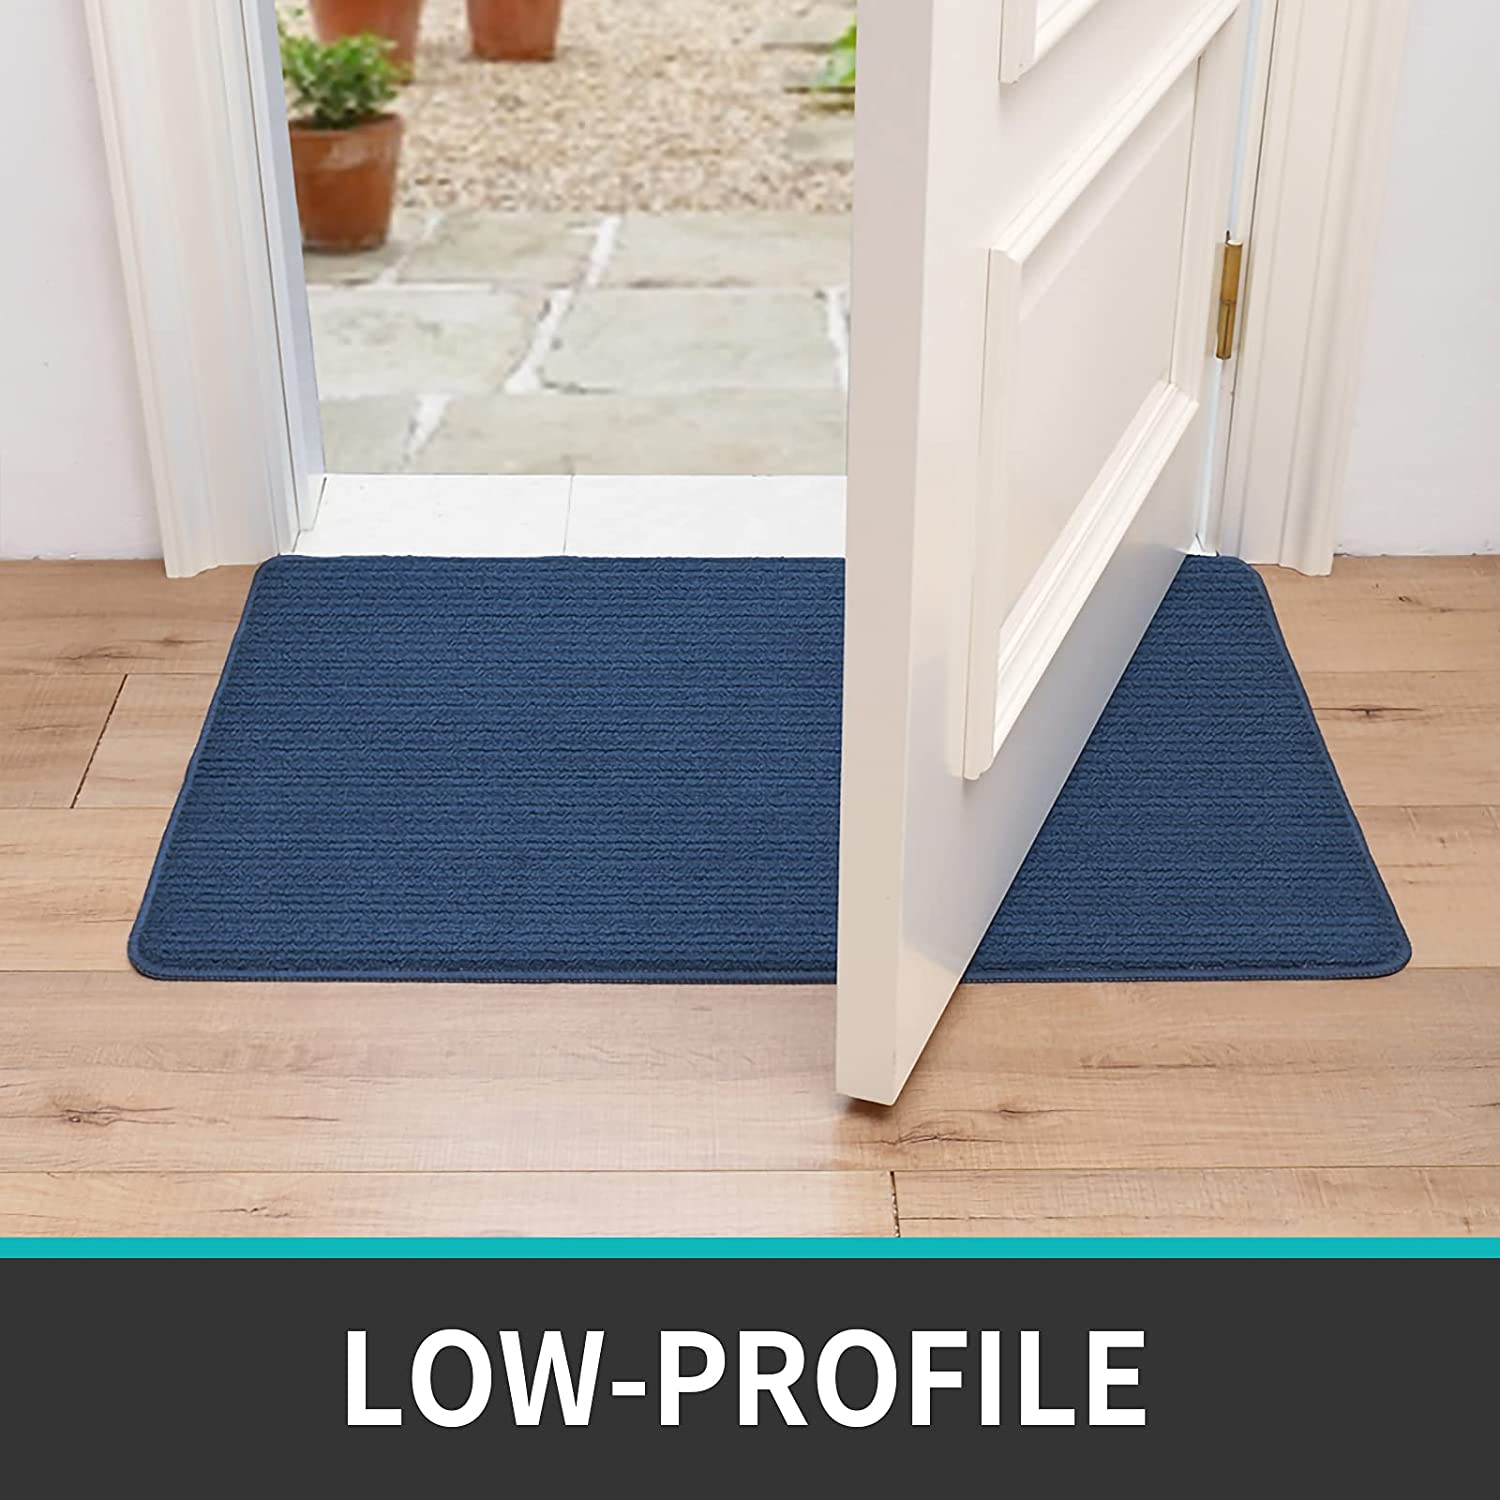 DEXI Door Mat Indoor Rugs for Entryway Floor Mats Inside Doormat